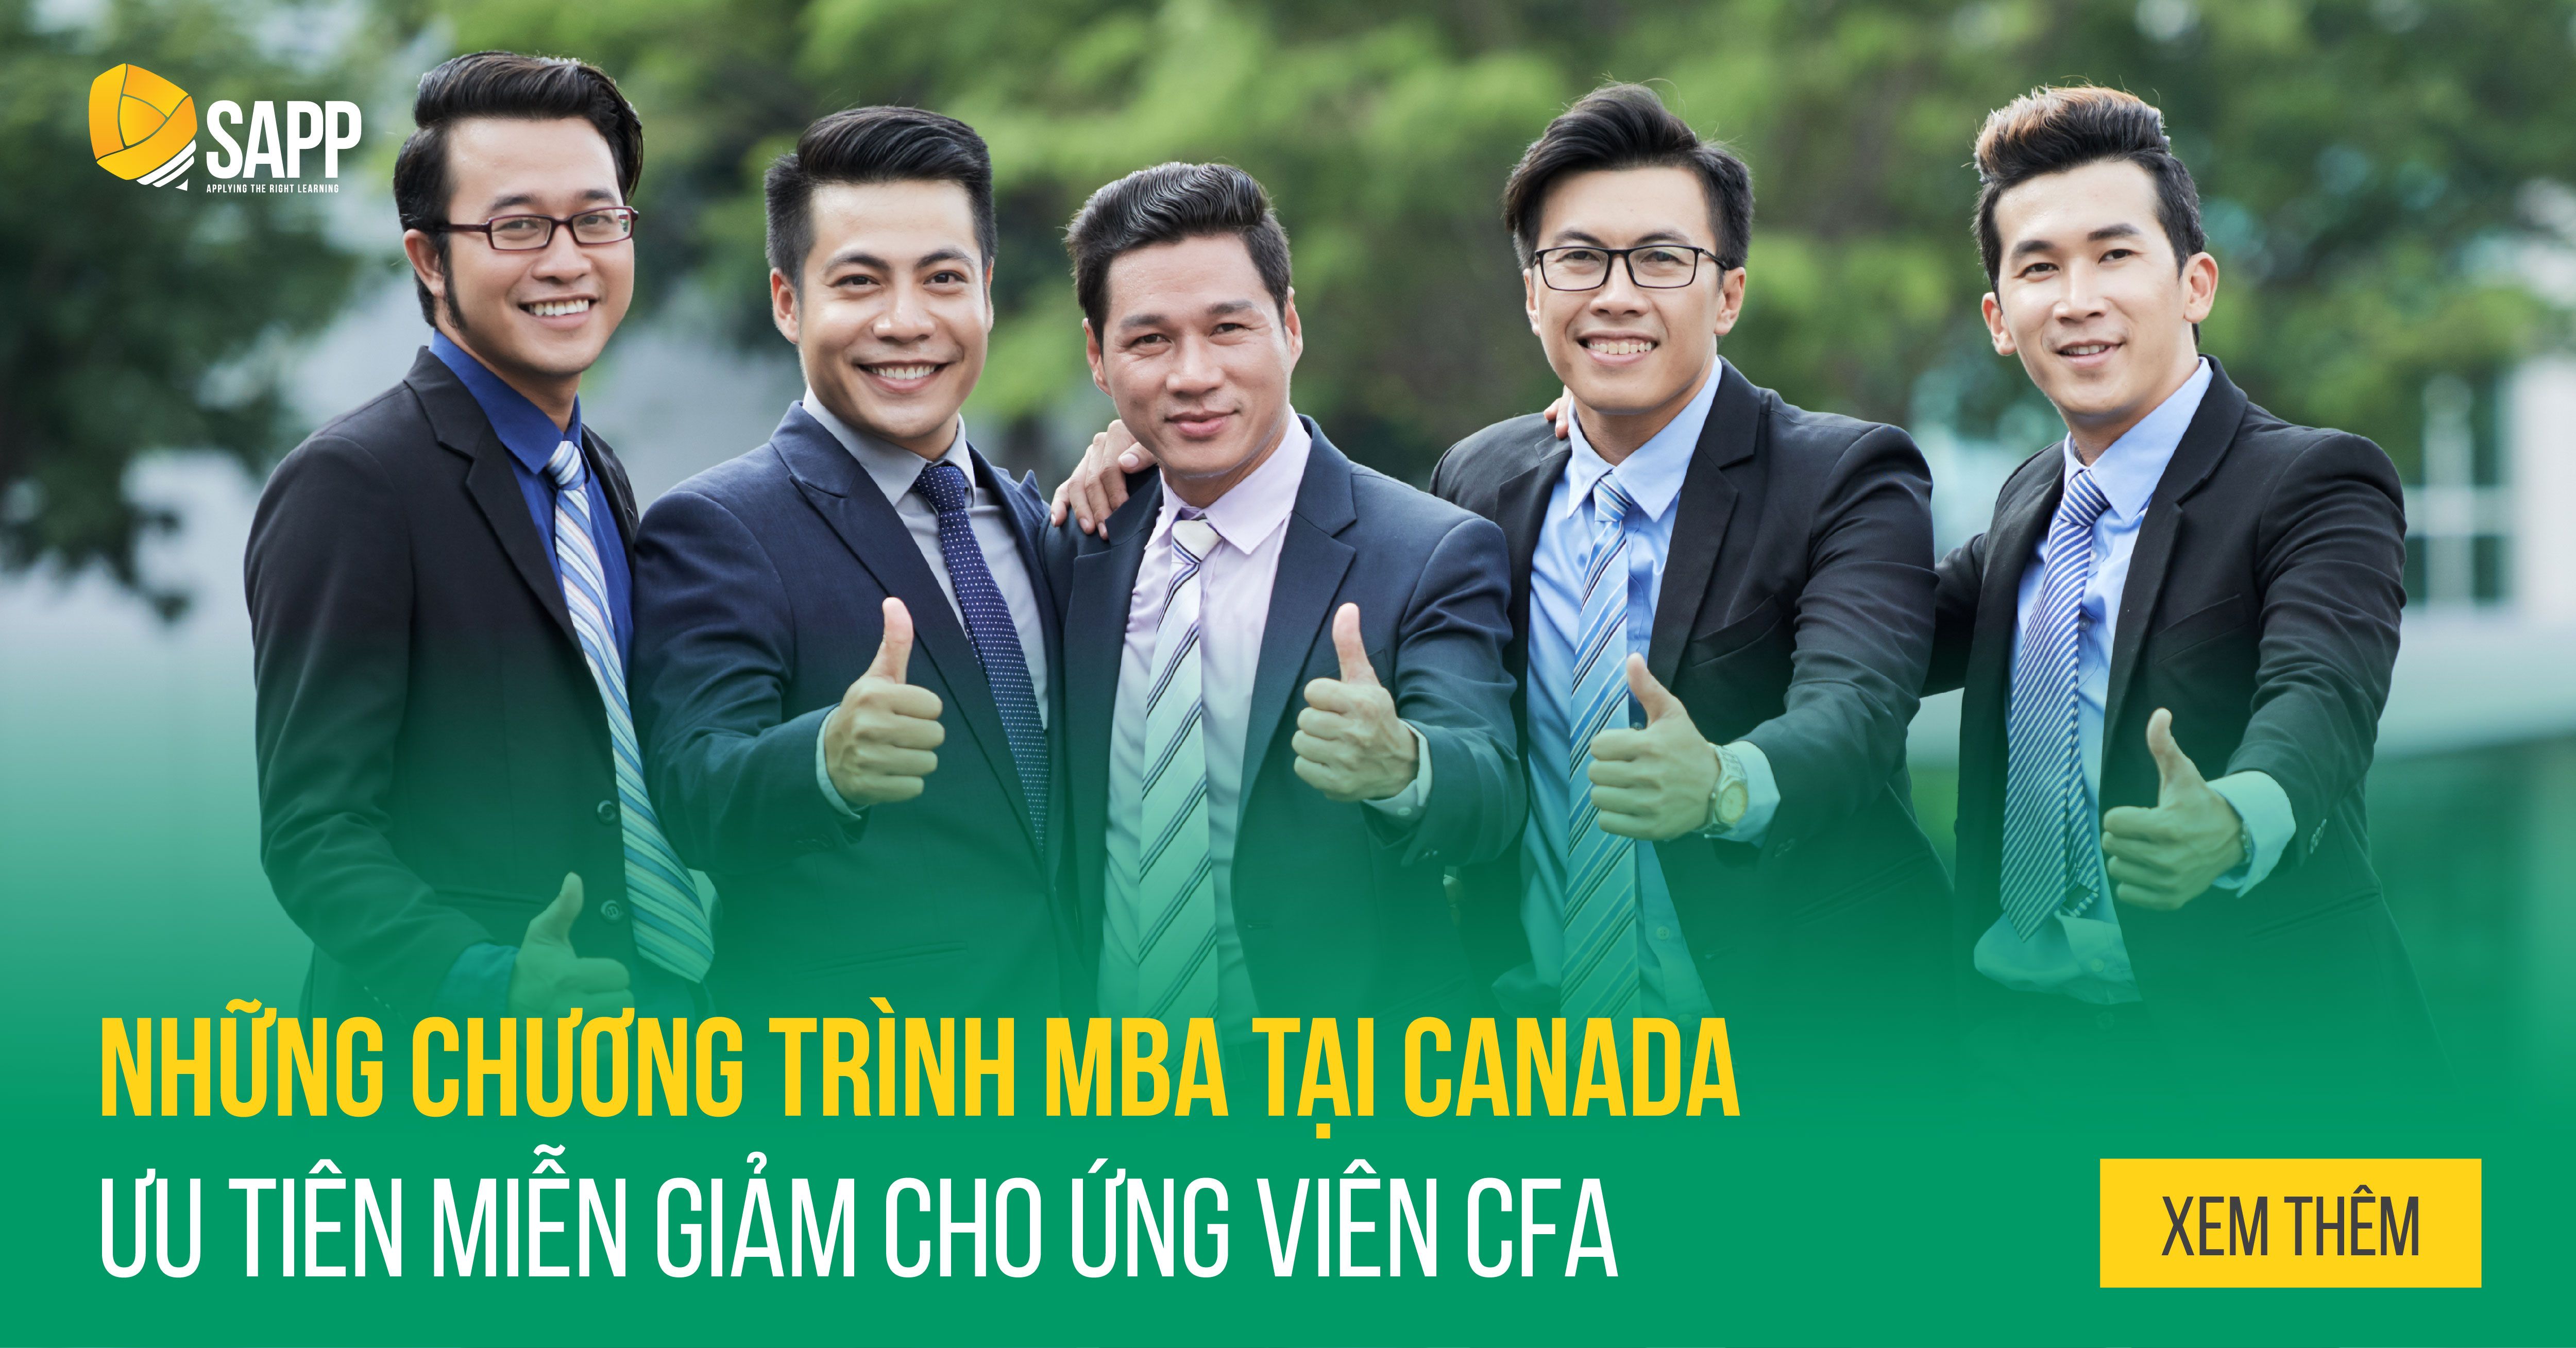 Những Chương Trình MBA tại Canada Ưu Tiên Miễn Giảm Cho Ứng Viên CFA